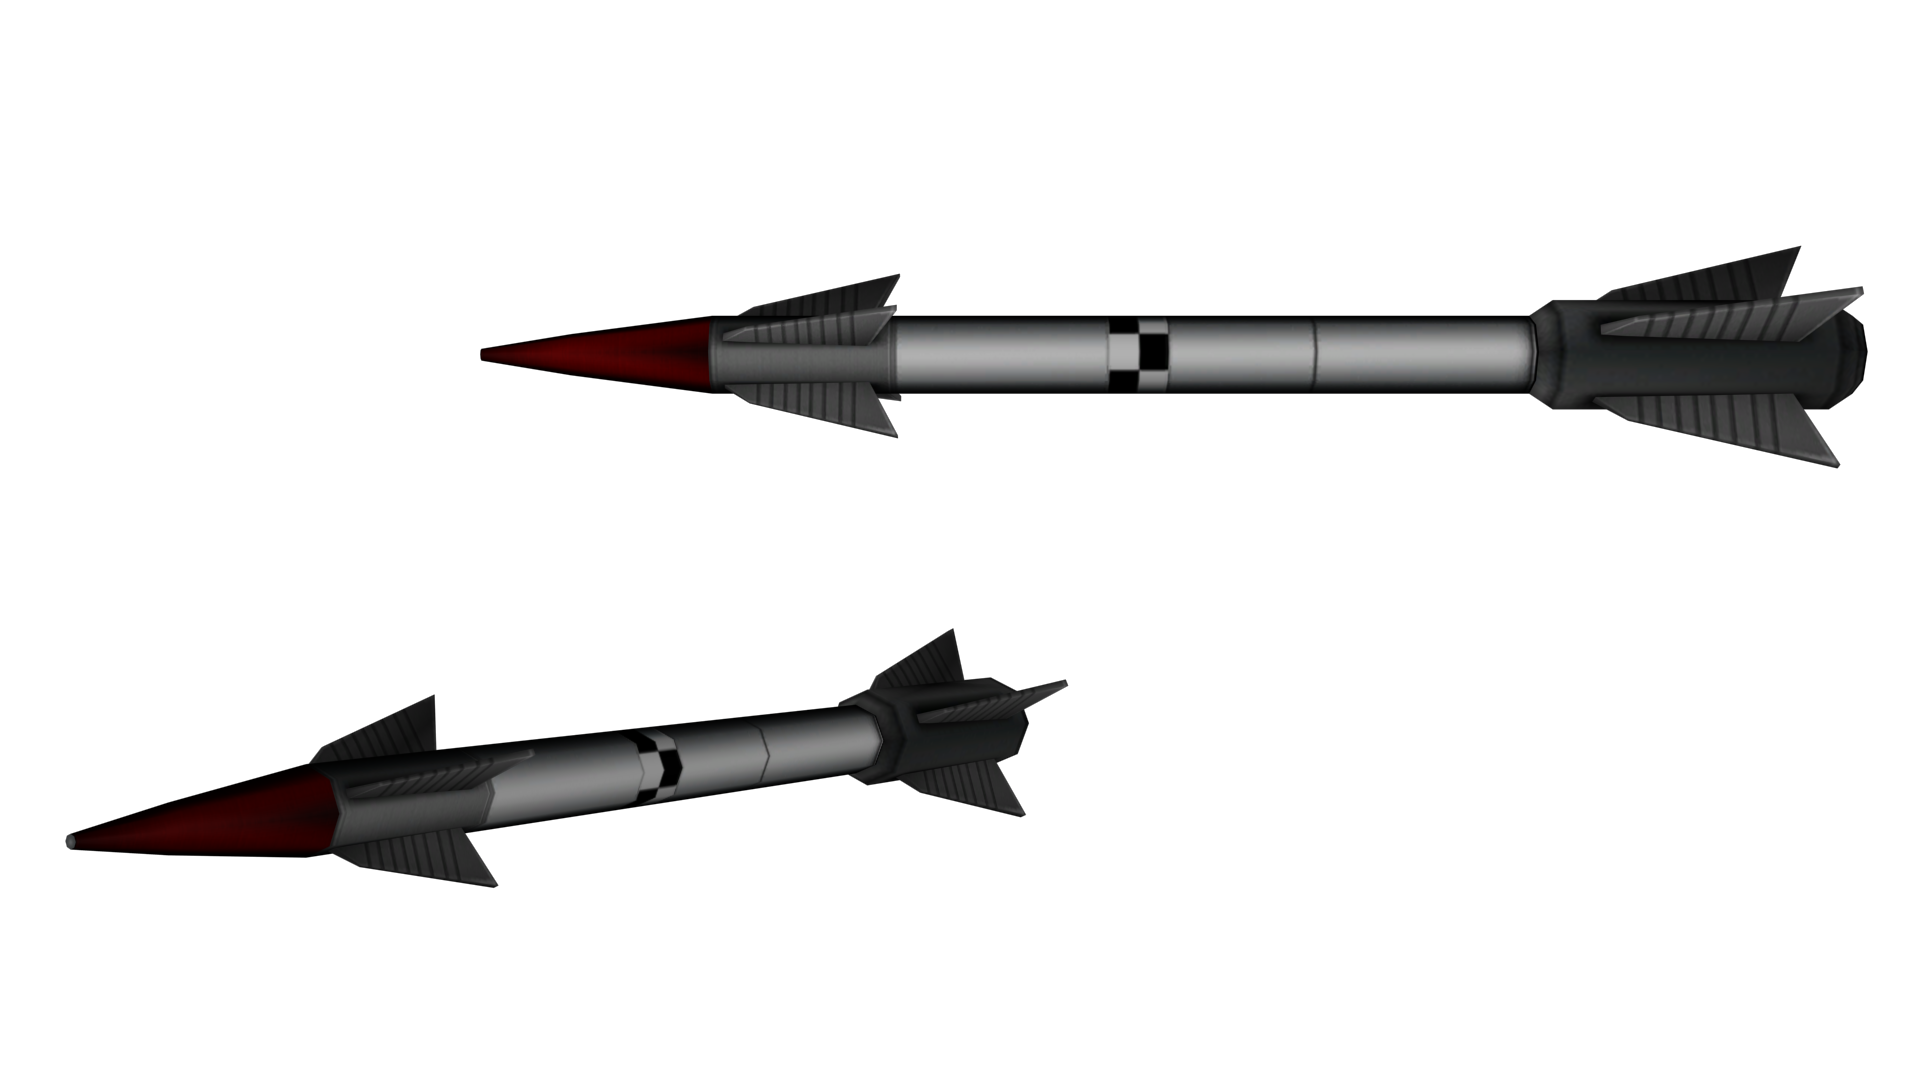 Missile PNG Image File